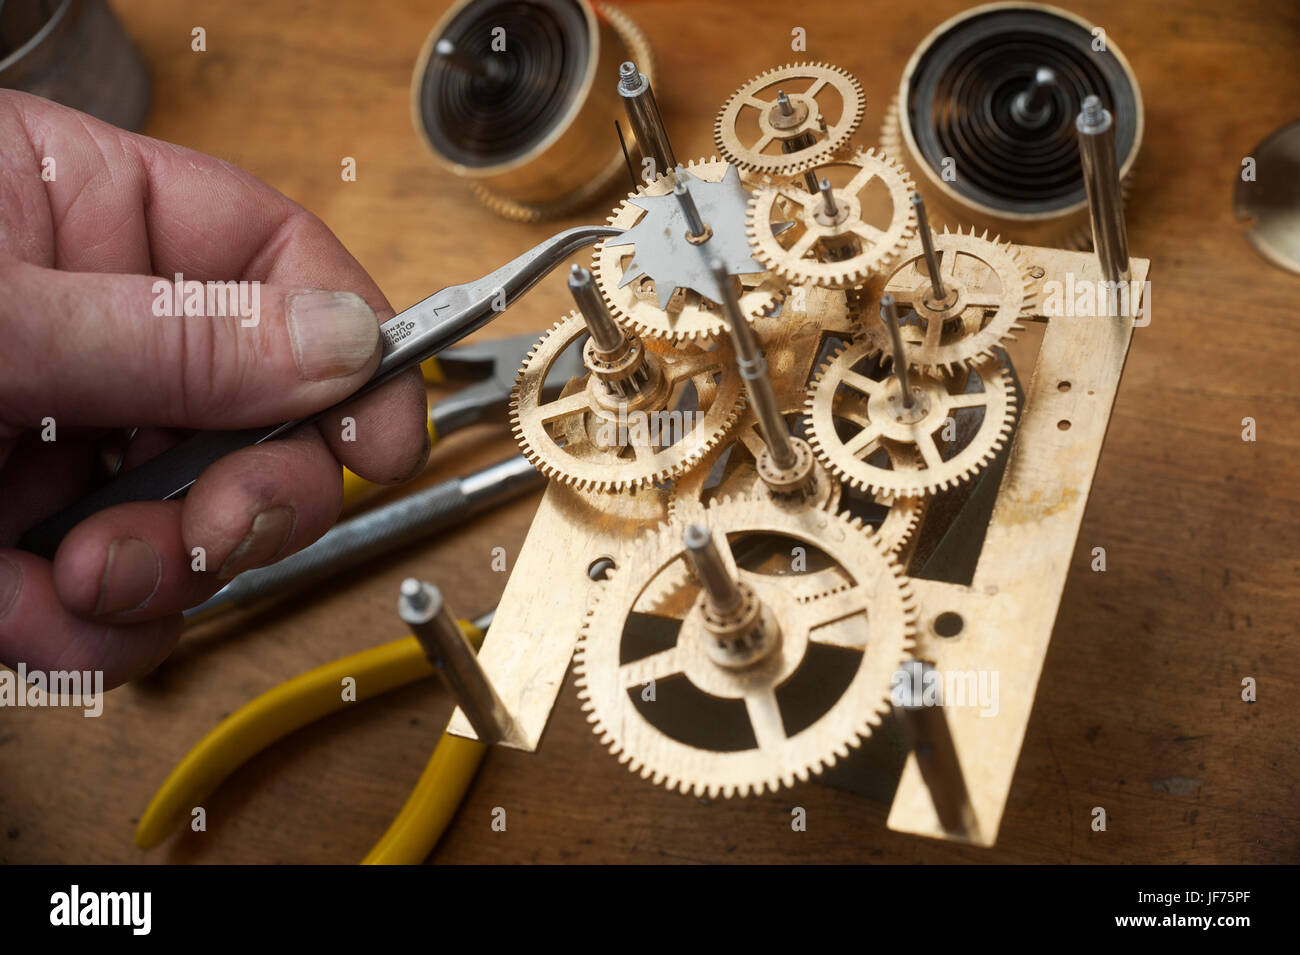 Los relojeros herramienta de trabajo con engranajes Foto de stock